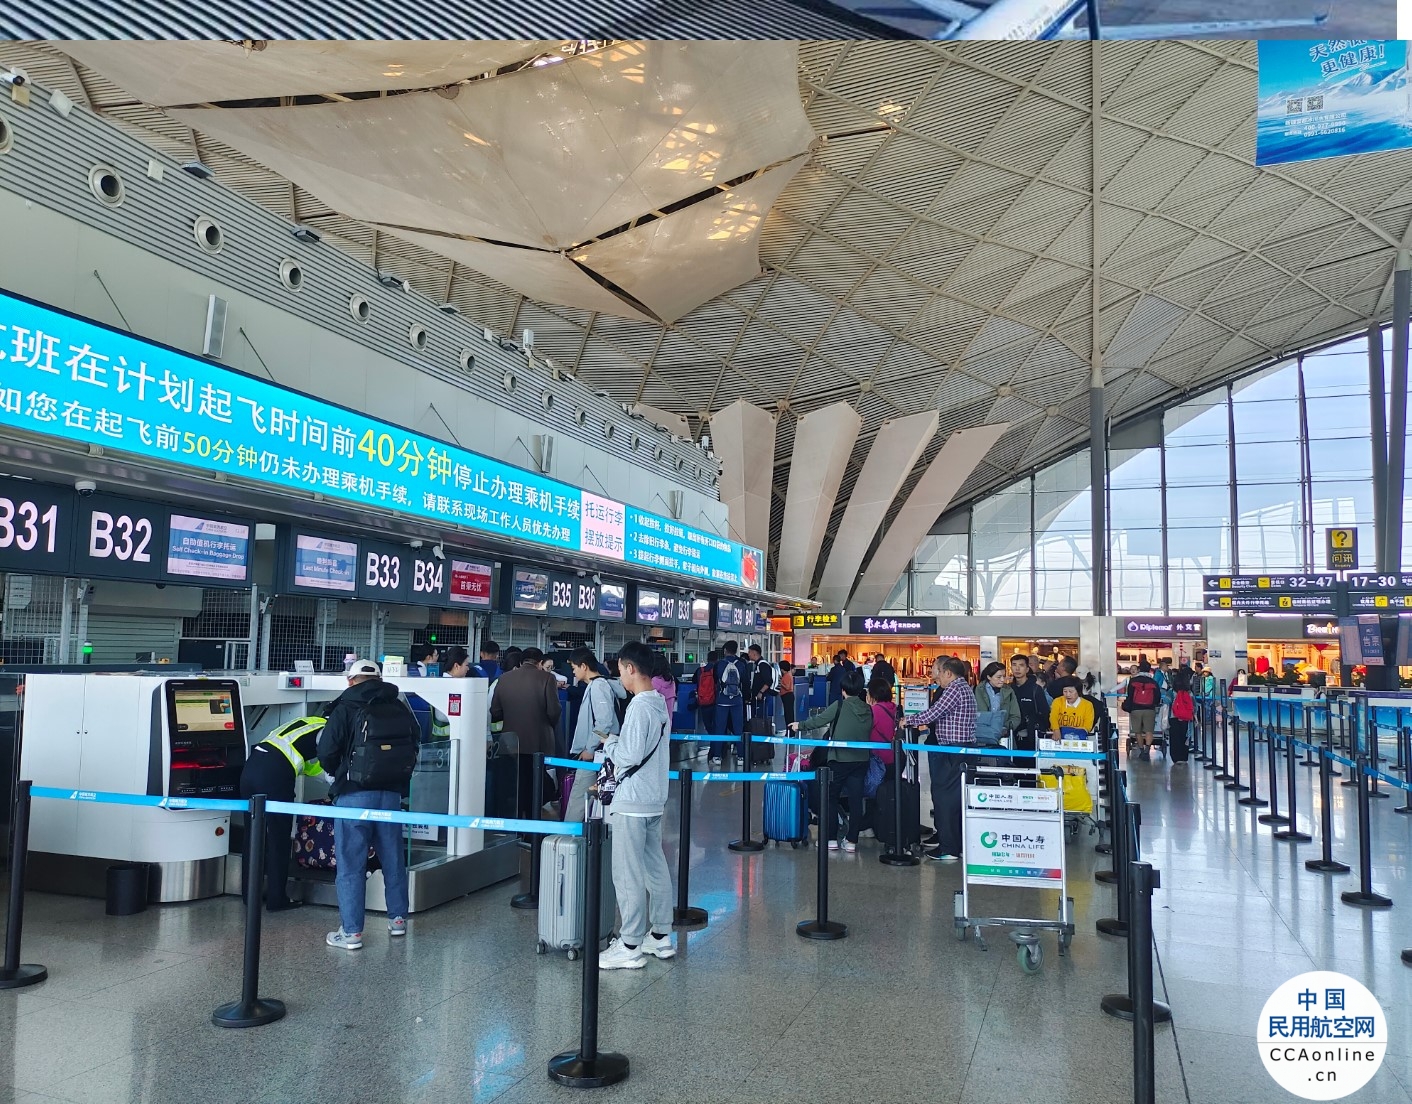 新疆机场集团年旅客吞吐量突破3000万人次 运输生产量持续增长 